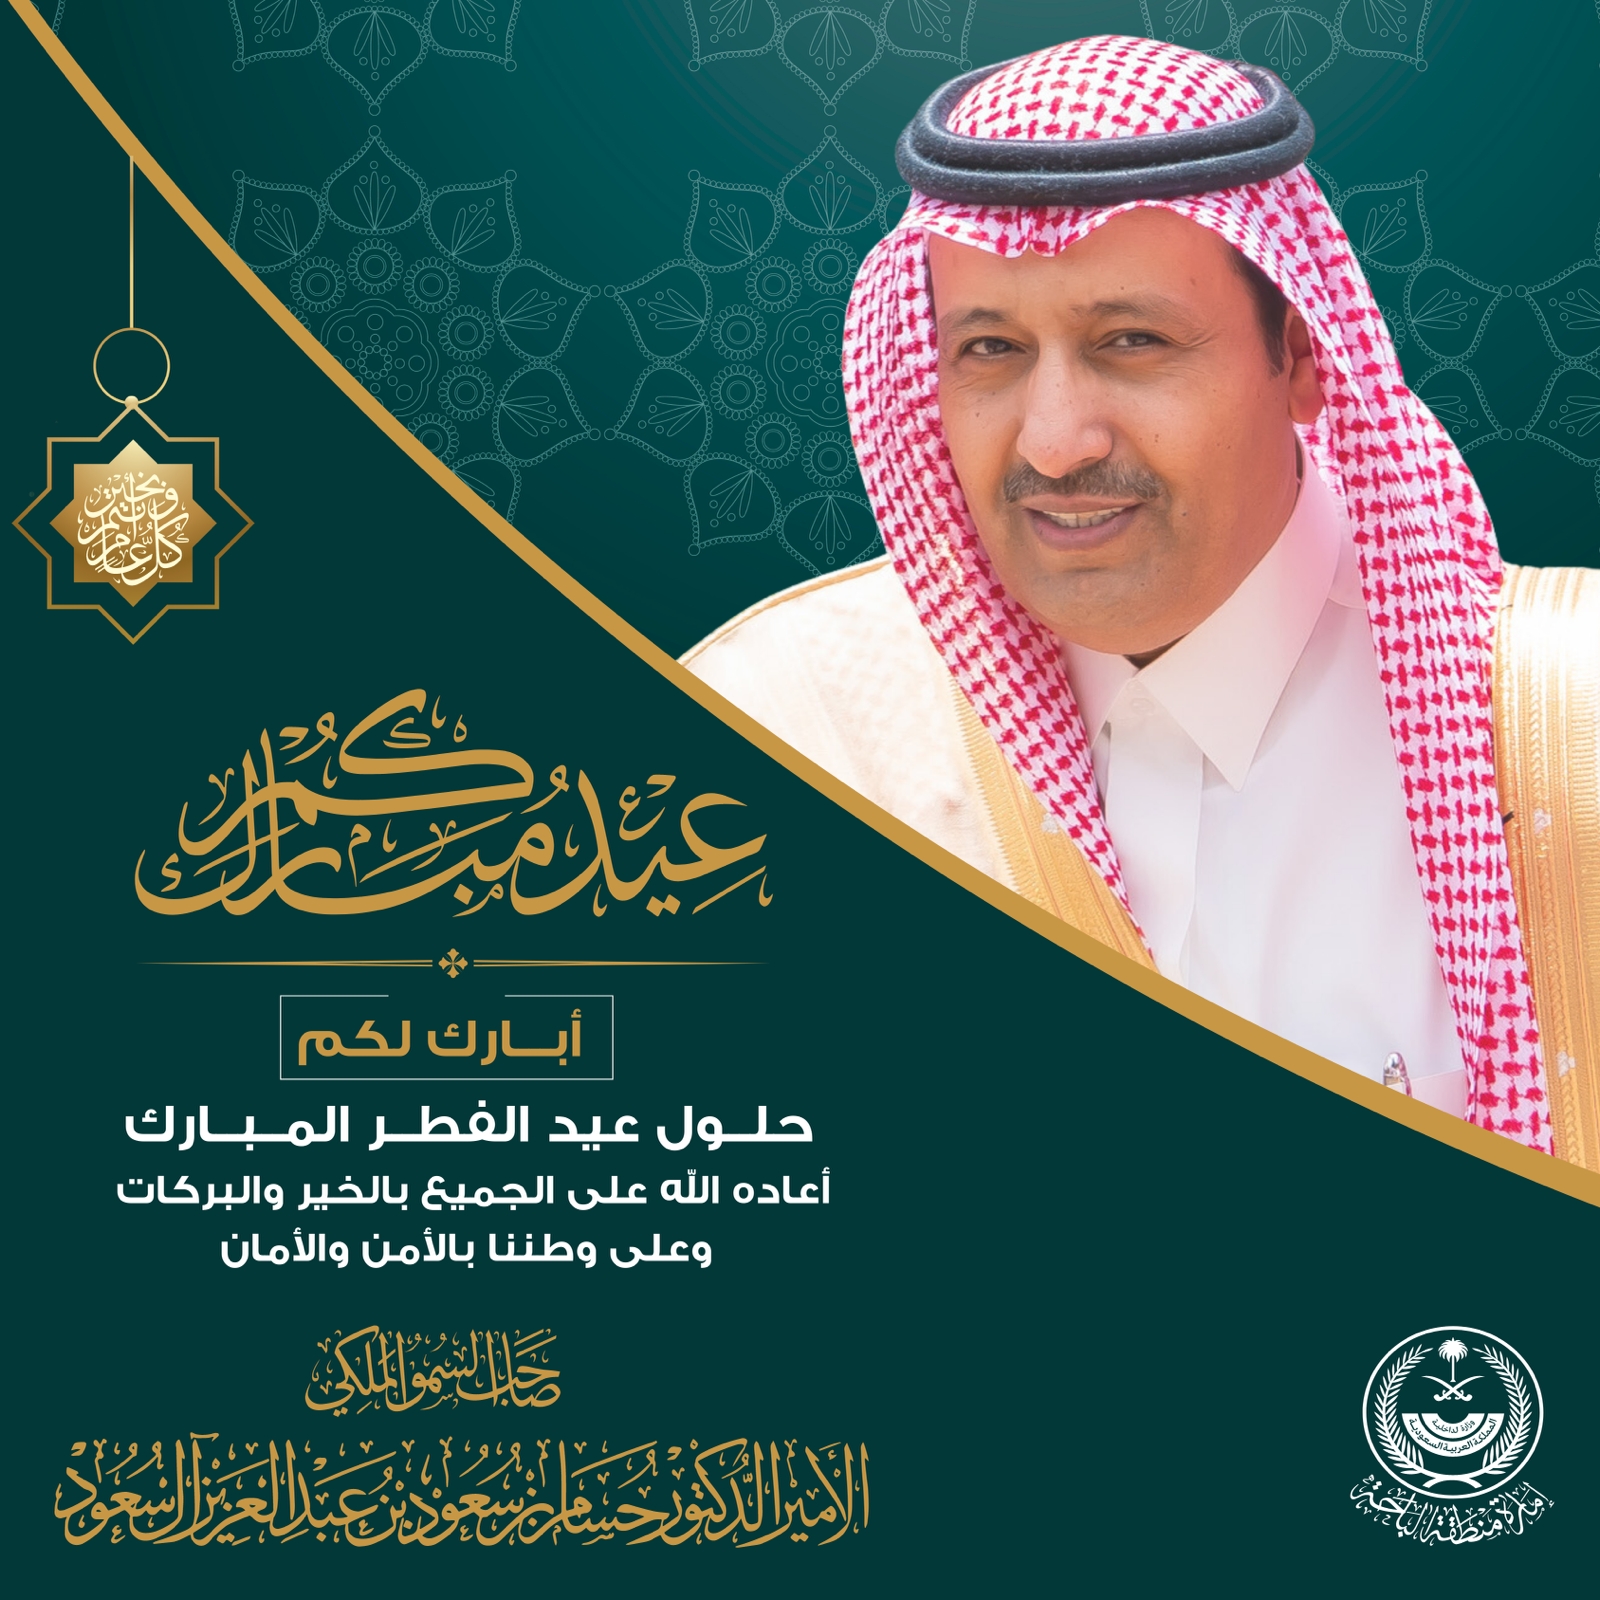 أمير الباحة يرفع التهنئة للقيادة الرشيدة بمناسبة حلول عيد الفطر المبارك